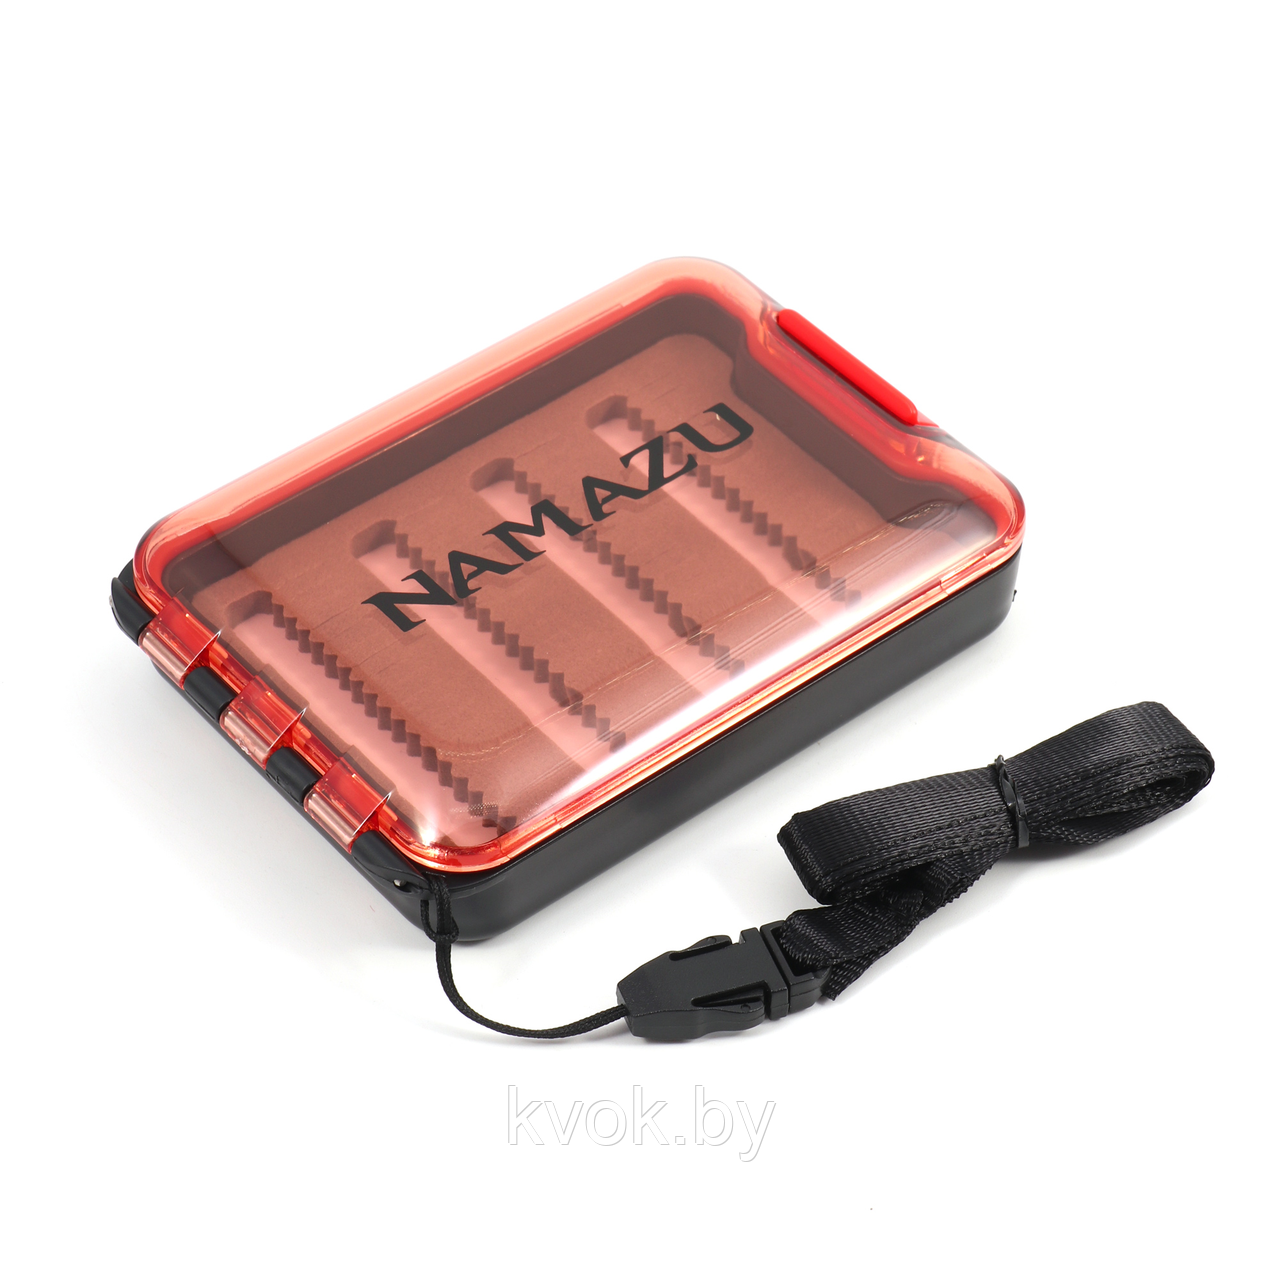 Коробка для мормышек и мелких аксессуаров Namazu N-BOX34 (104х72х22 мм)